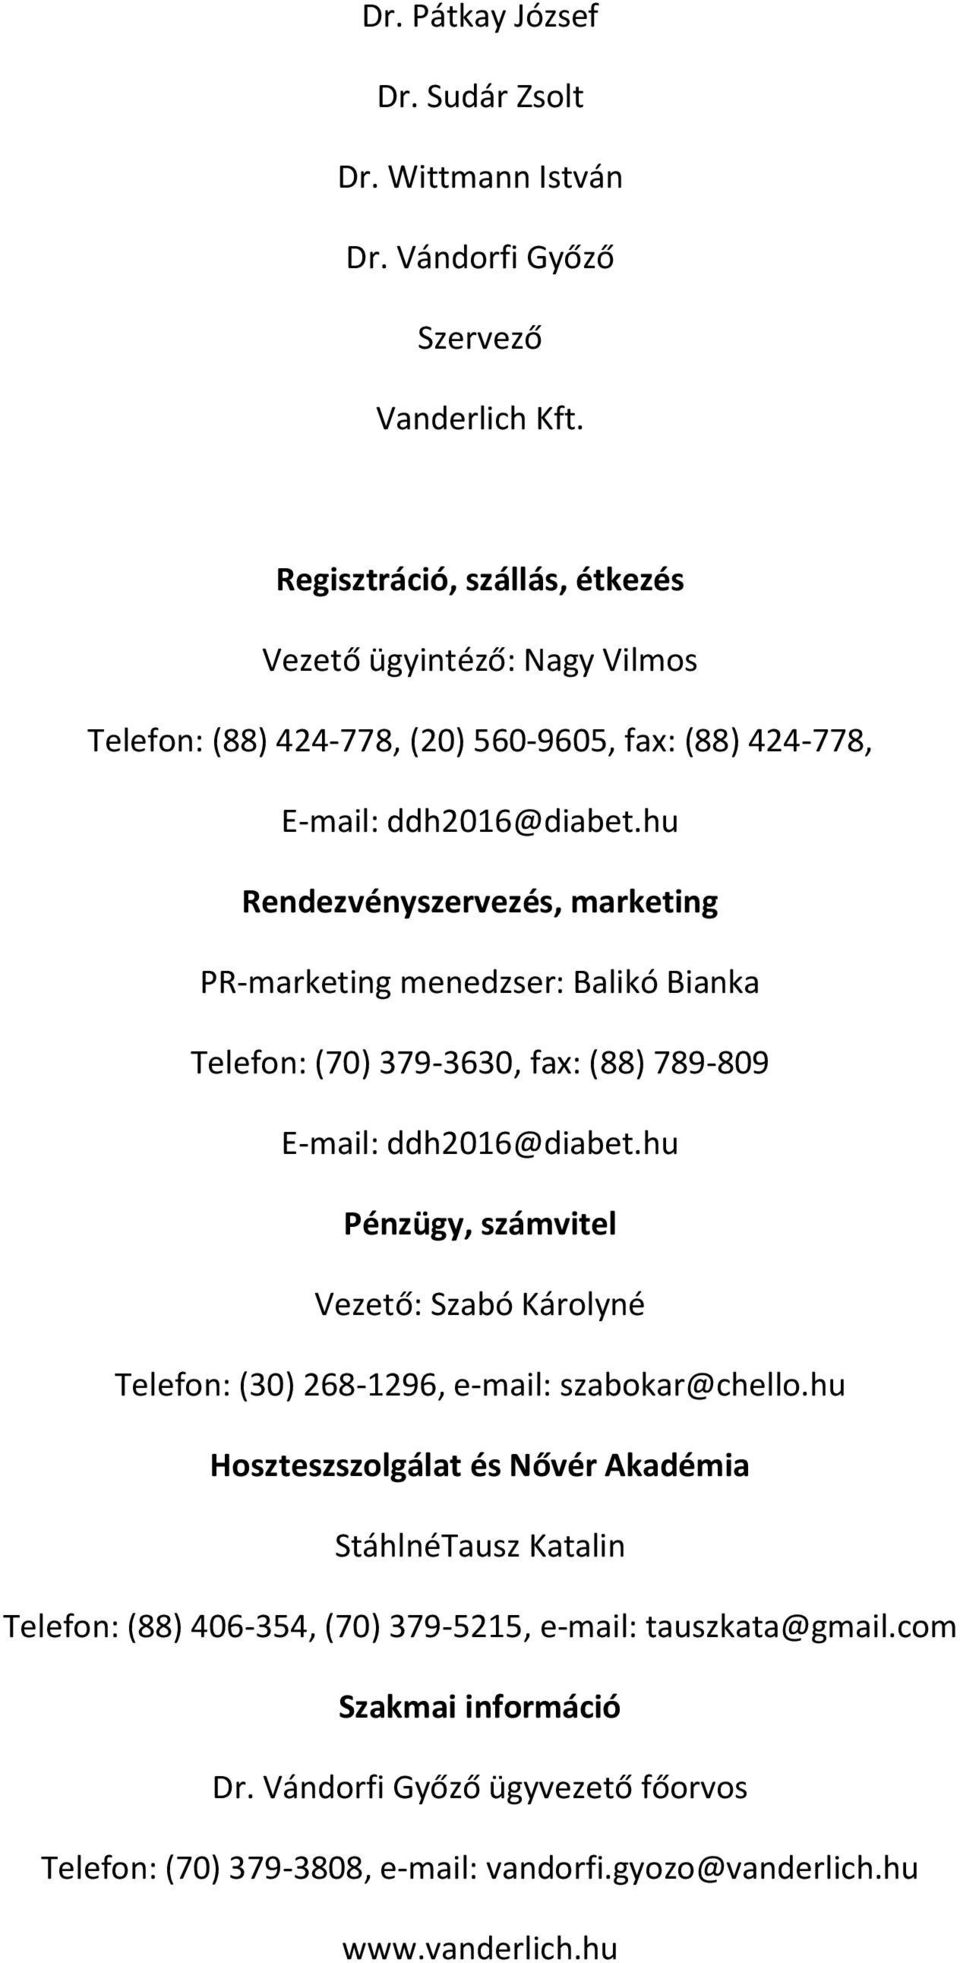 PROGRAMFÜZET. A veszprémi Csolnoky Ferenc Kórház, a MESZK veszprémi  területi szervezete és a Vanderlich Kft. tisztelettel meghívja Önt és  munkatársait - PDF Free Download